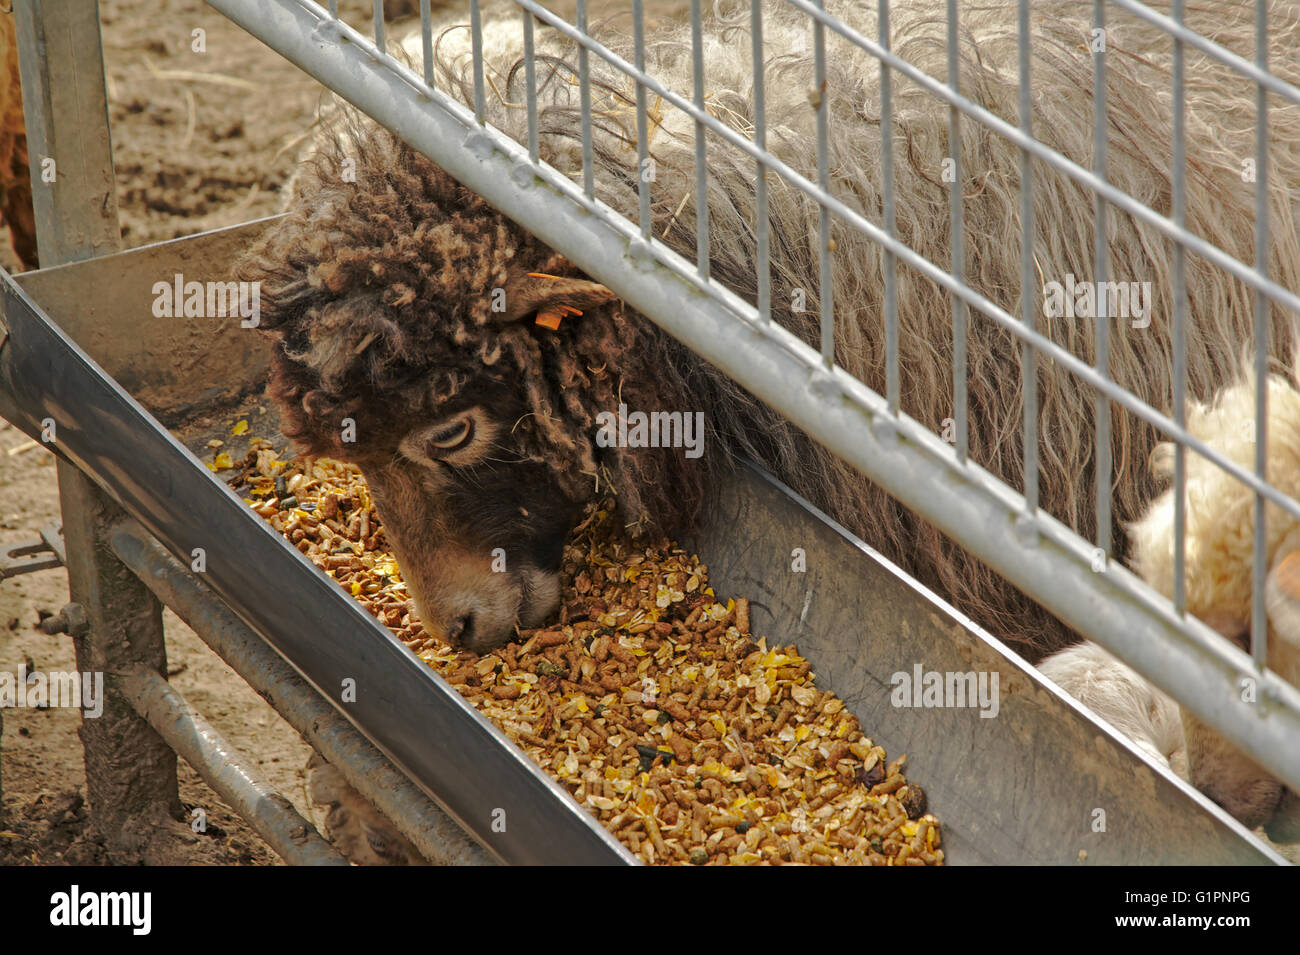 Moutons d'Ouessant de manger dans une ferme d'alimentation Banque D'Images